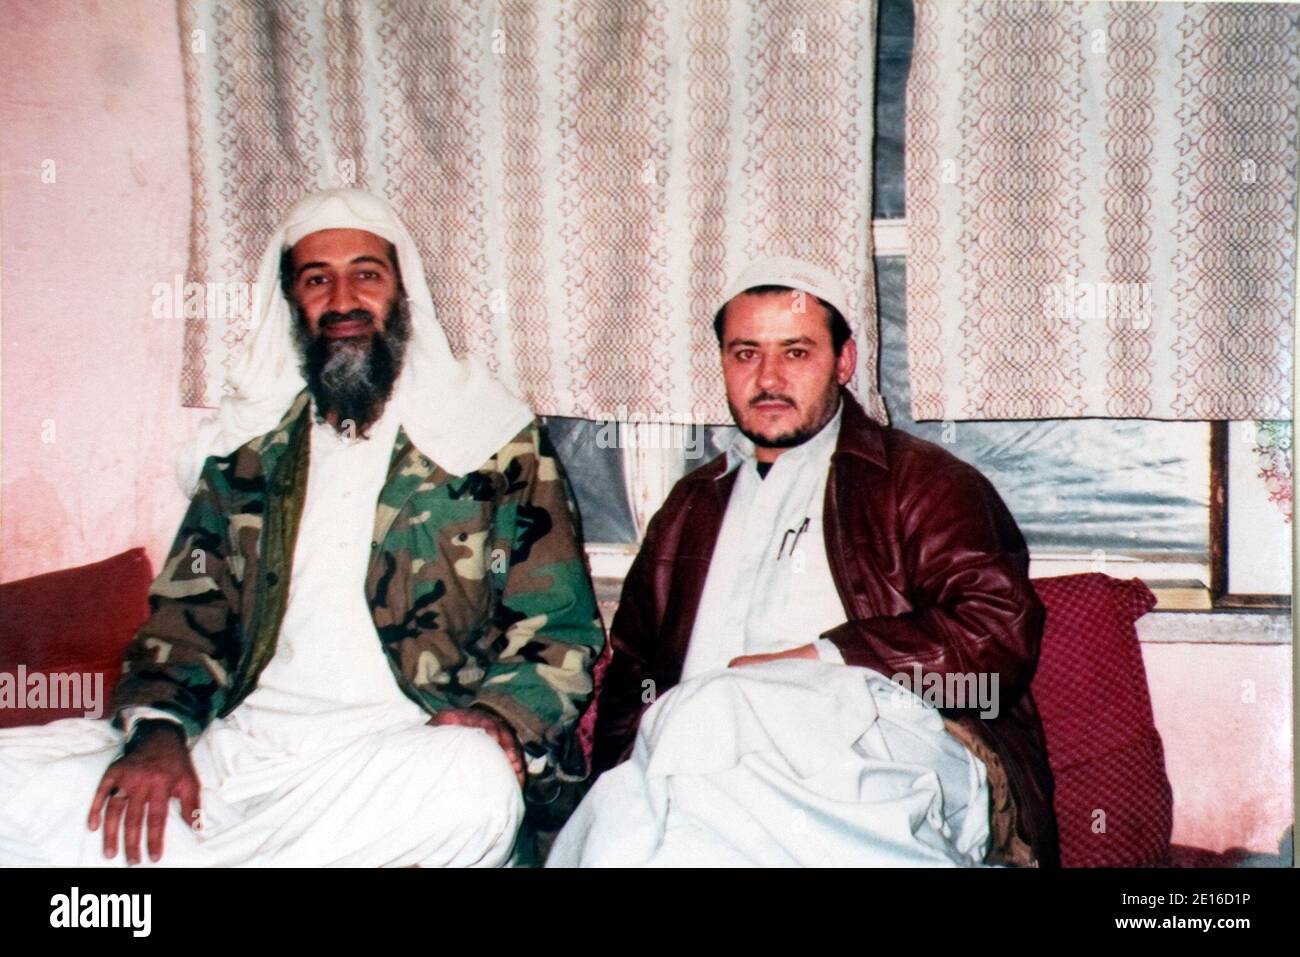 Ahmad Zaida posando con Osama Bin Laden durante su primera reunión en 2000. Ahmad Zaidan, jefe de la oficina de al Jazeera en Islamabad, ha entrevistado a Osama bin Laden varias veces. Fue invitado a la boda de uno de los hijos de Osama Bin Laden, y recibió personalmente mensajes de al Qaeda para difundirse. Foto de Julien Fouchet/ABACAPRESS.COM Foto de stock